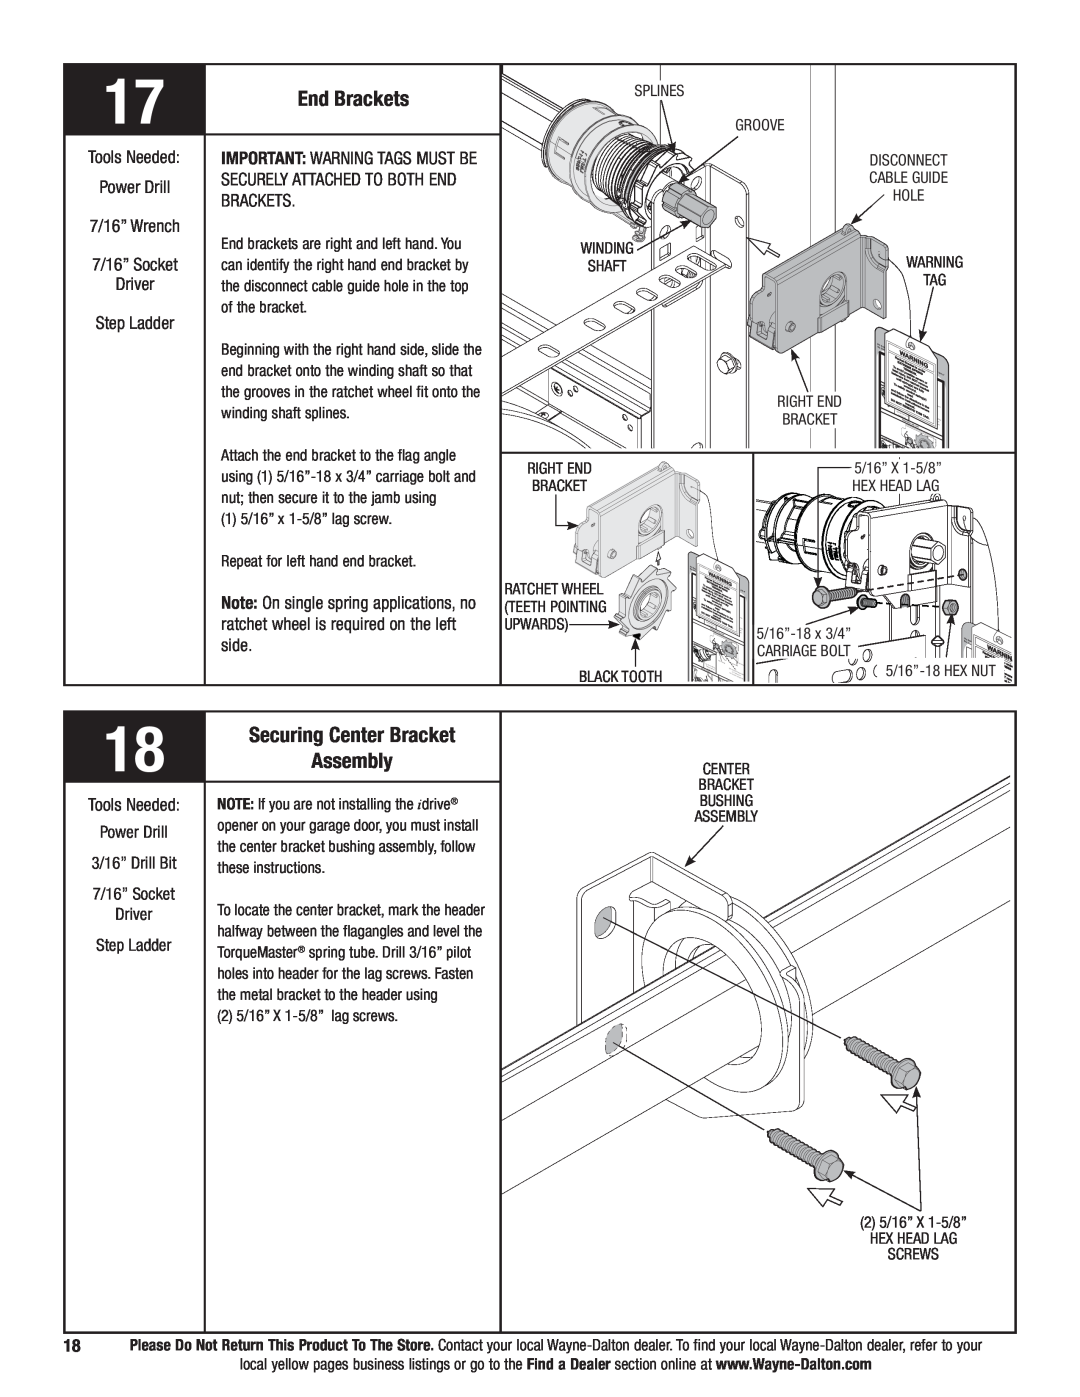 Wayne-Dalton 9700 End Brackets, Securing Center Bracket, Assembly, 7/16” Wrench 7/16” Socket Driver Step Ladder, side 